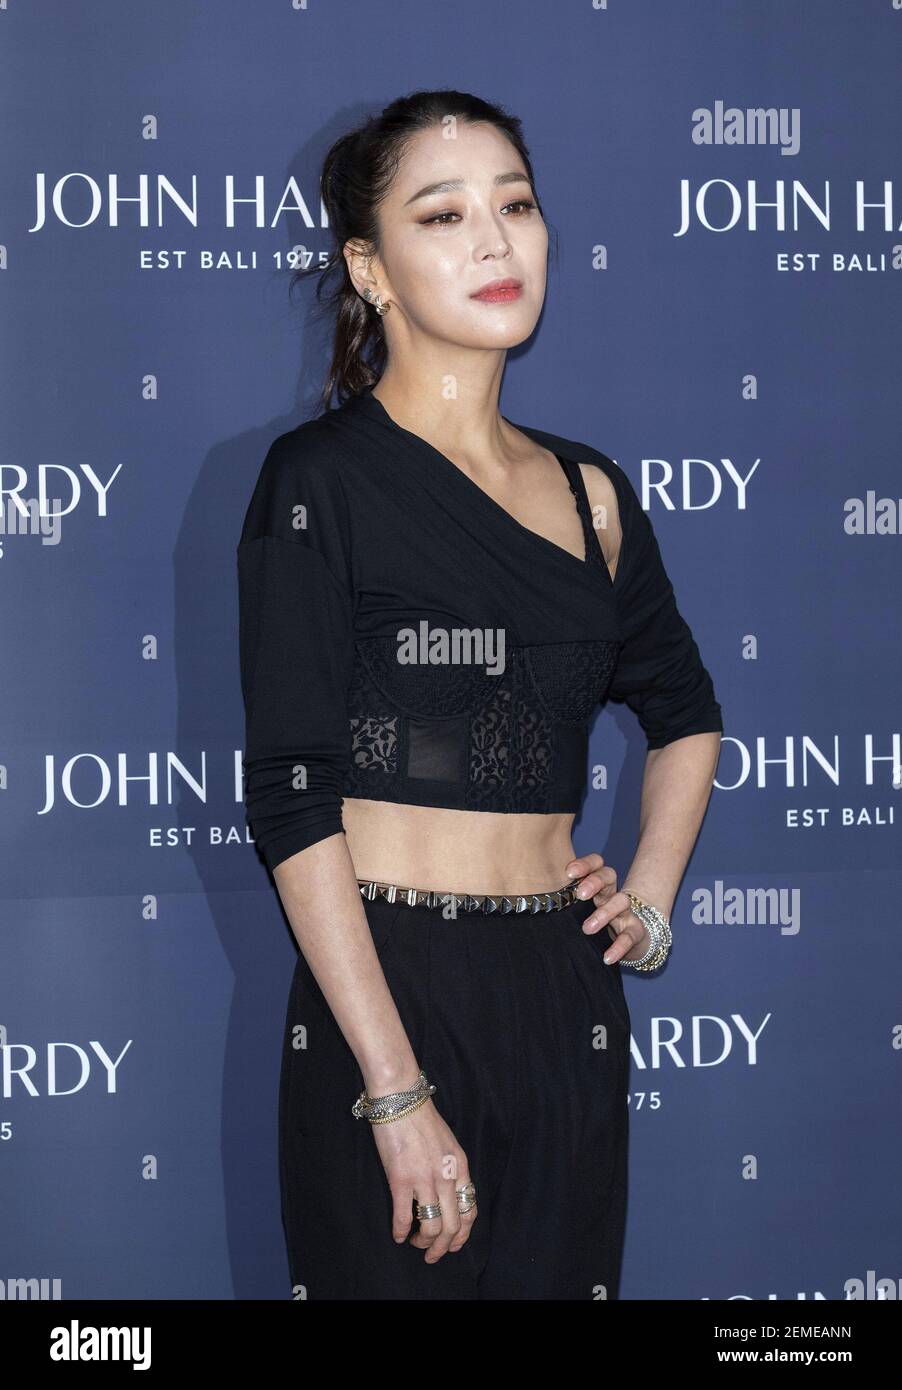 De vez en cuando Vandalir Ventilación 13 Febrero 2019 - Seúl, Corea del Sur : la actriz surcoreana han Go-eun,  asiste a la llamada fotográfica para la Marca de moda de joyería 'John  Hardy' que se lanza en